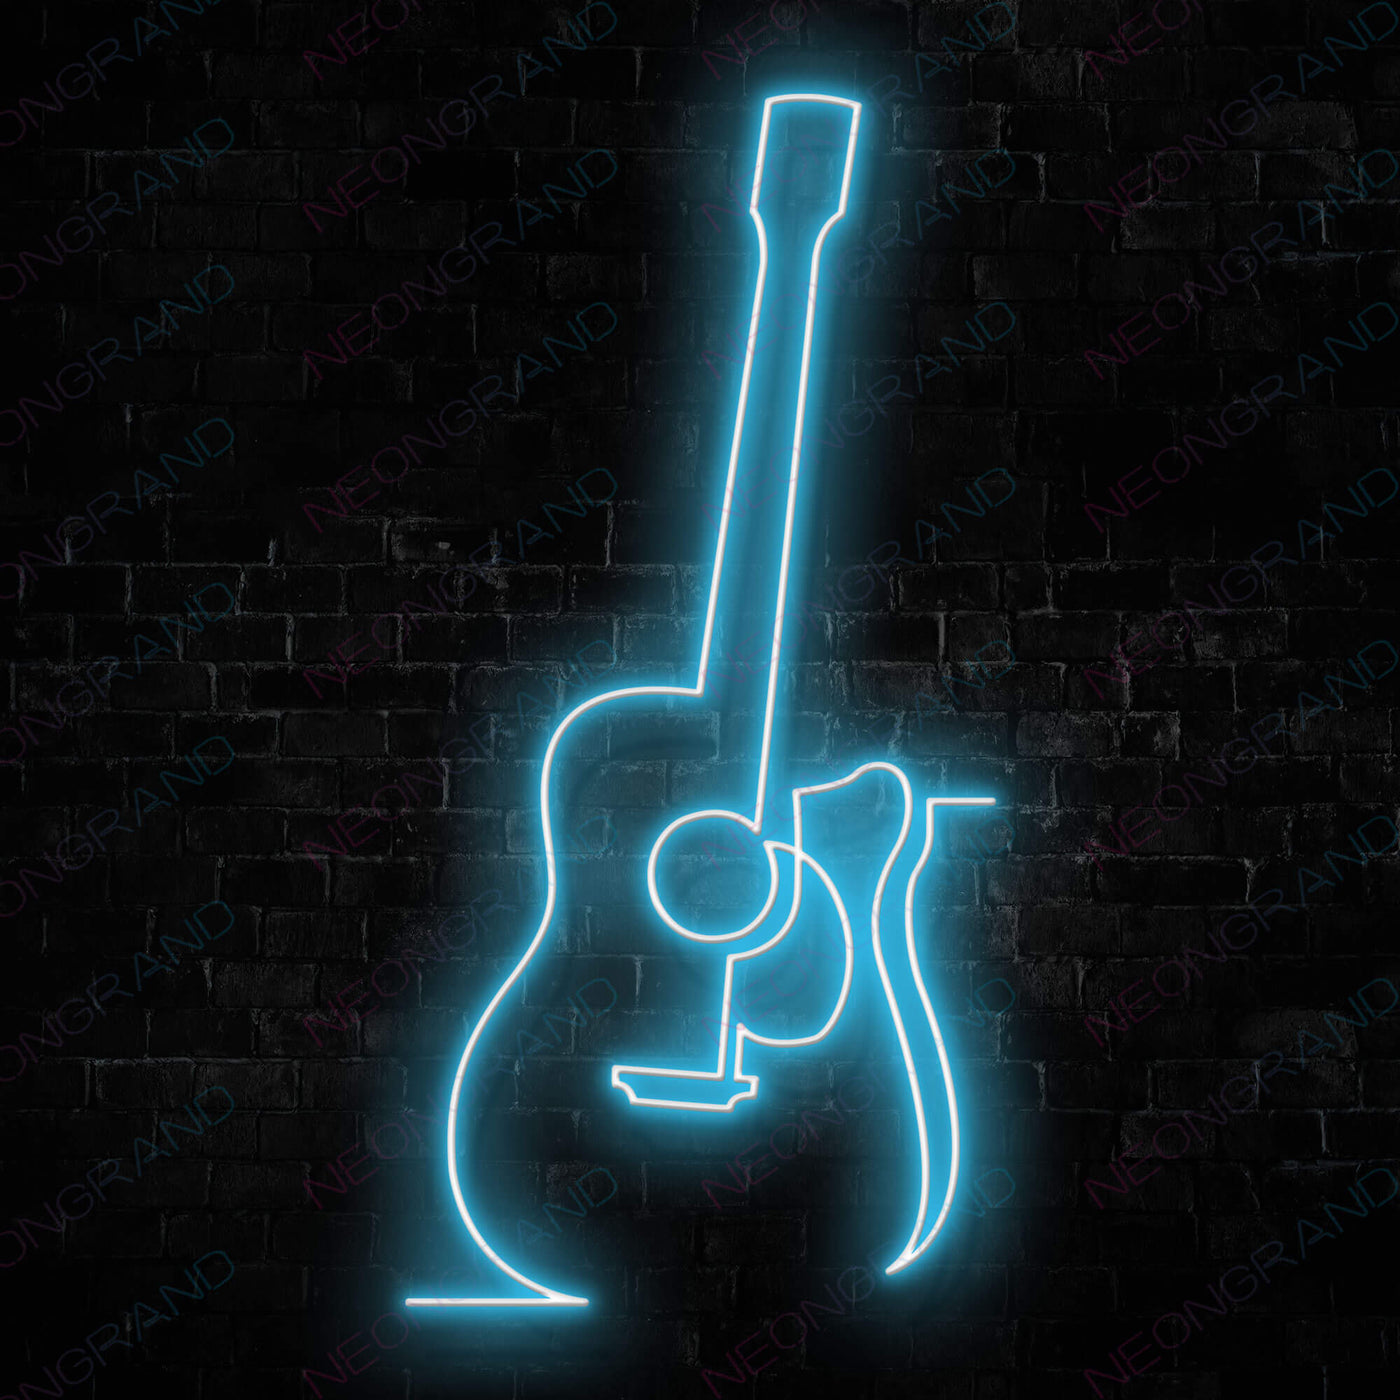 Guitar Neon Sign Music Led Light light blue